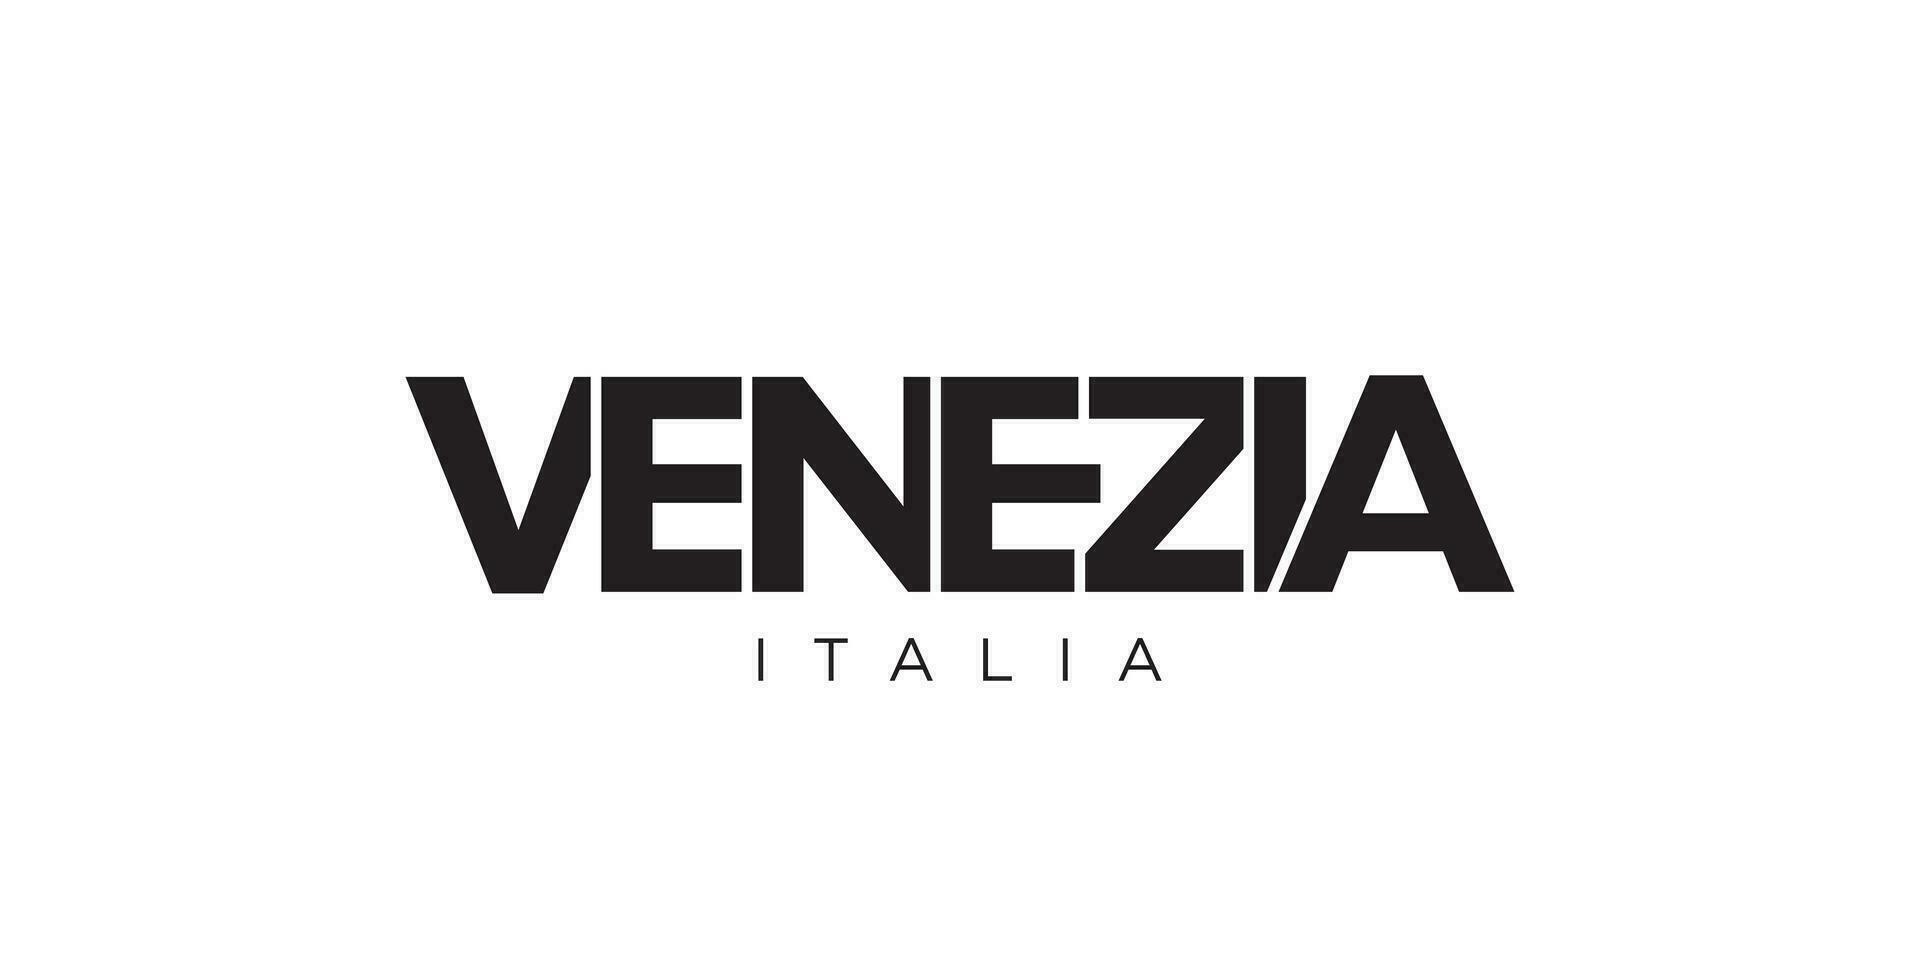 venezia dans le italia emblème. le conception Caractéristiques une géométrique style, vecteur illustration avec audacieux typographie dans une moderne Police de caractère. le graphique slogan caractères.